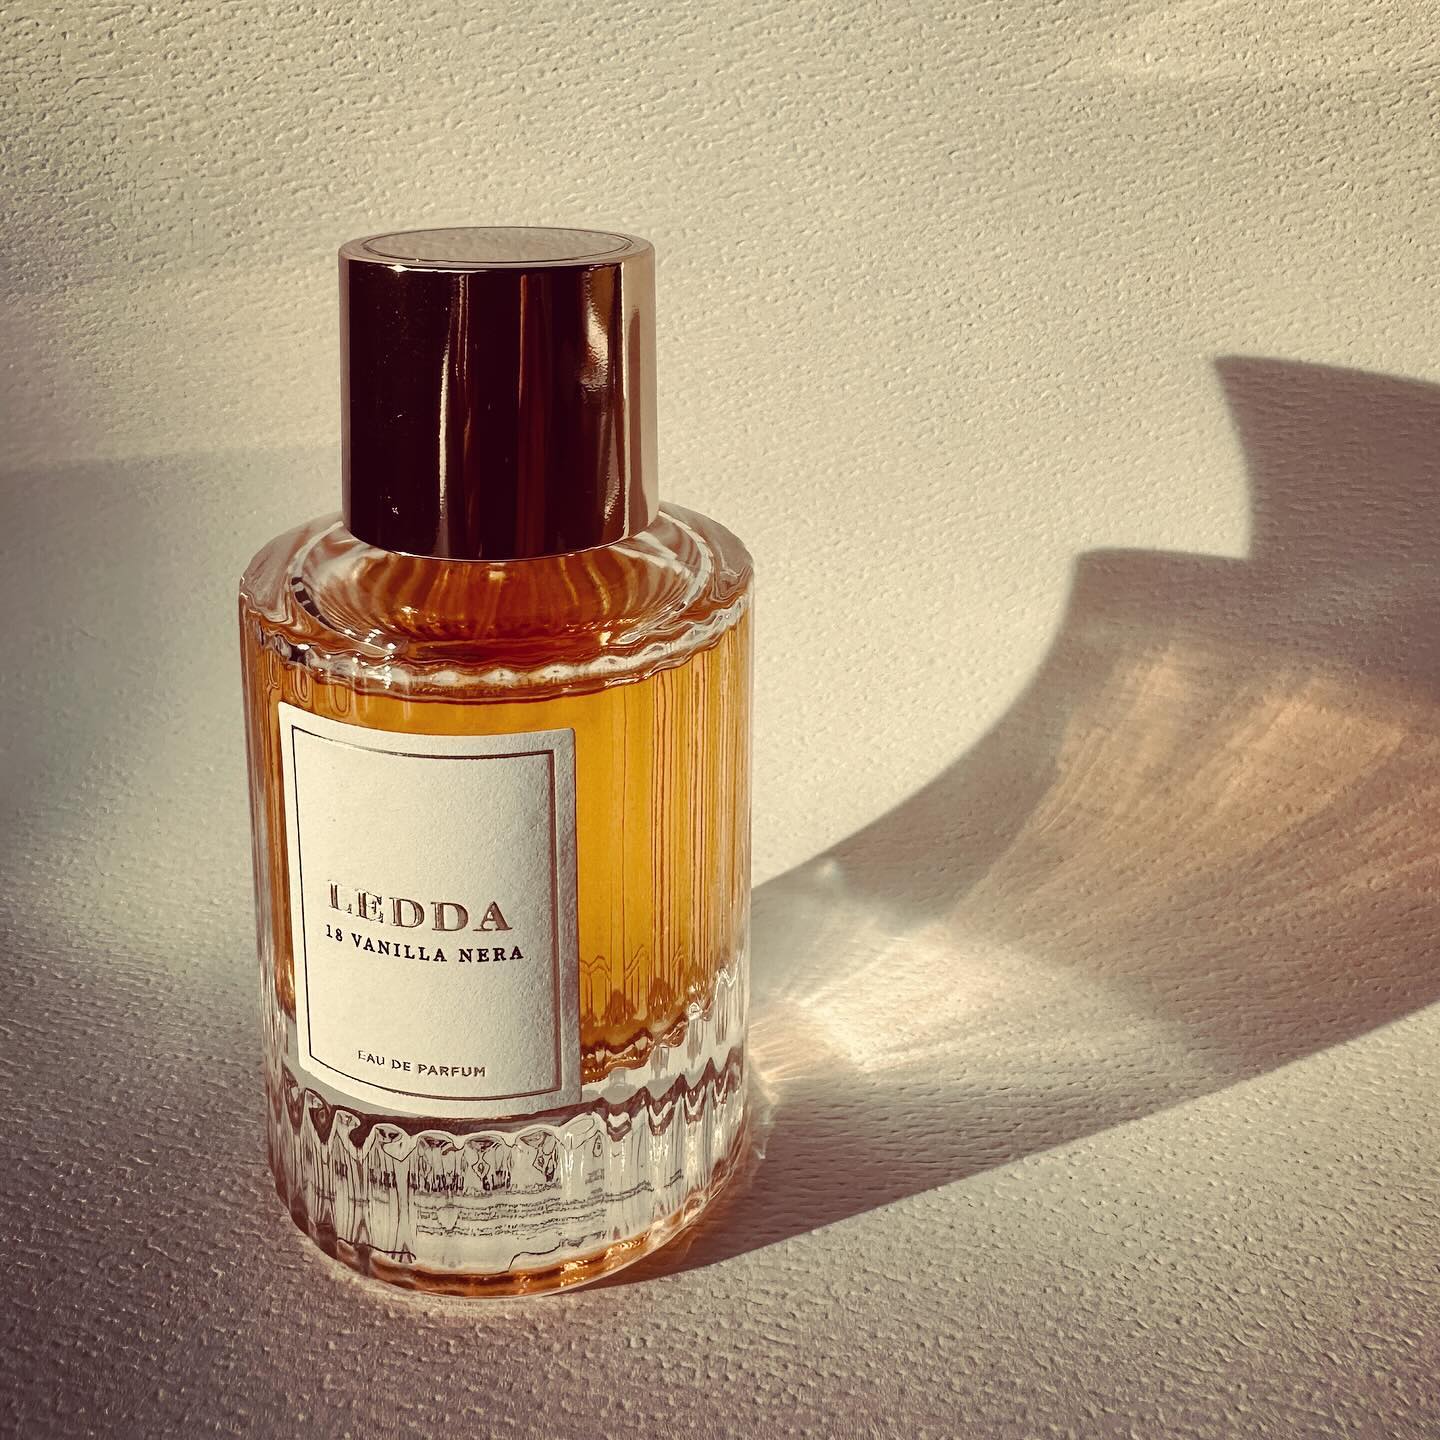 Ledda 19 Vanilla Nera Perfume Review | Canadian Beauty